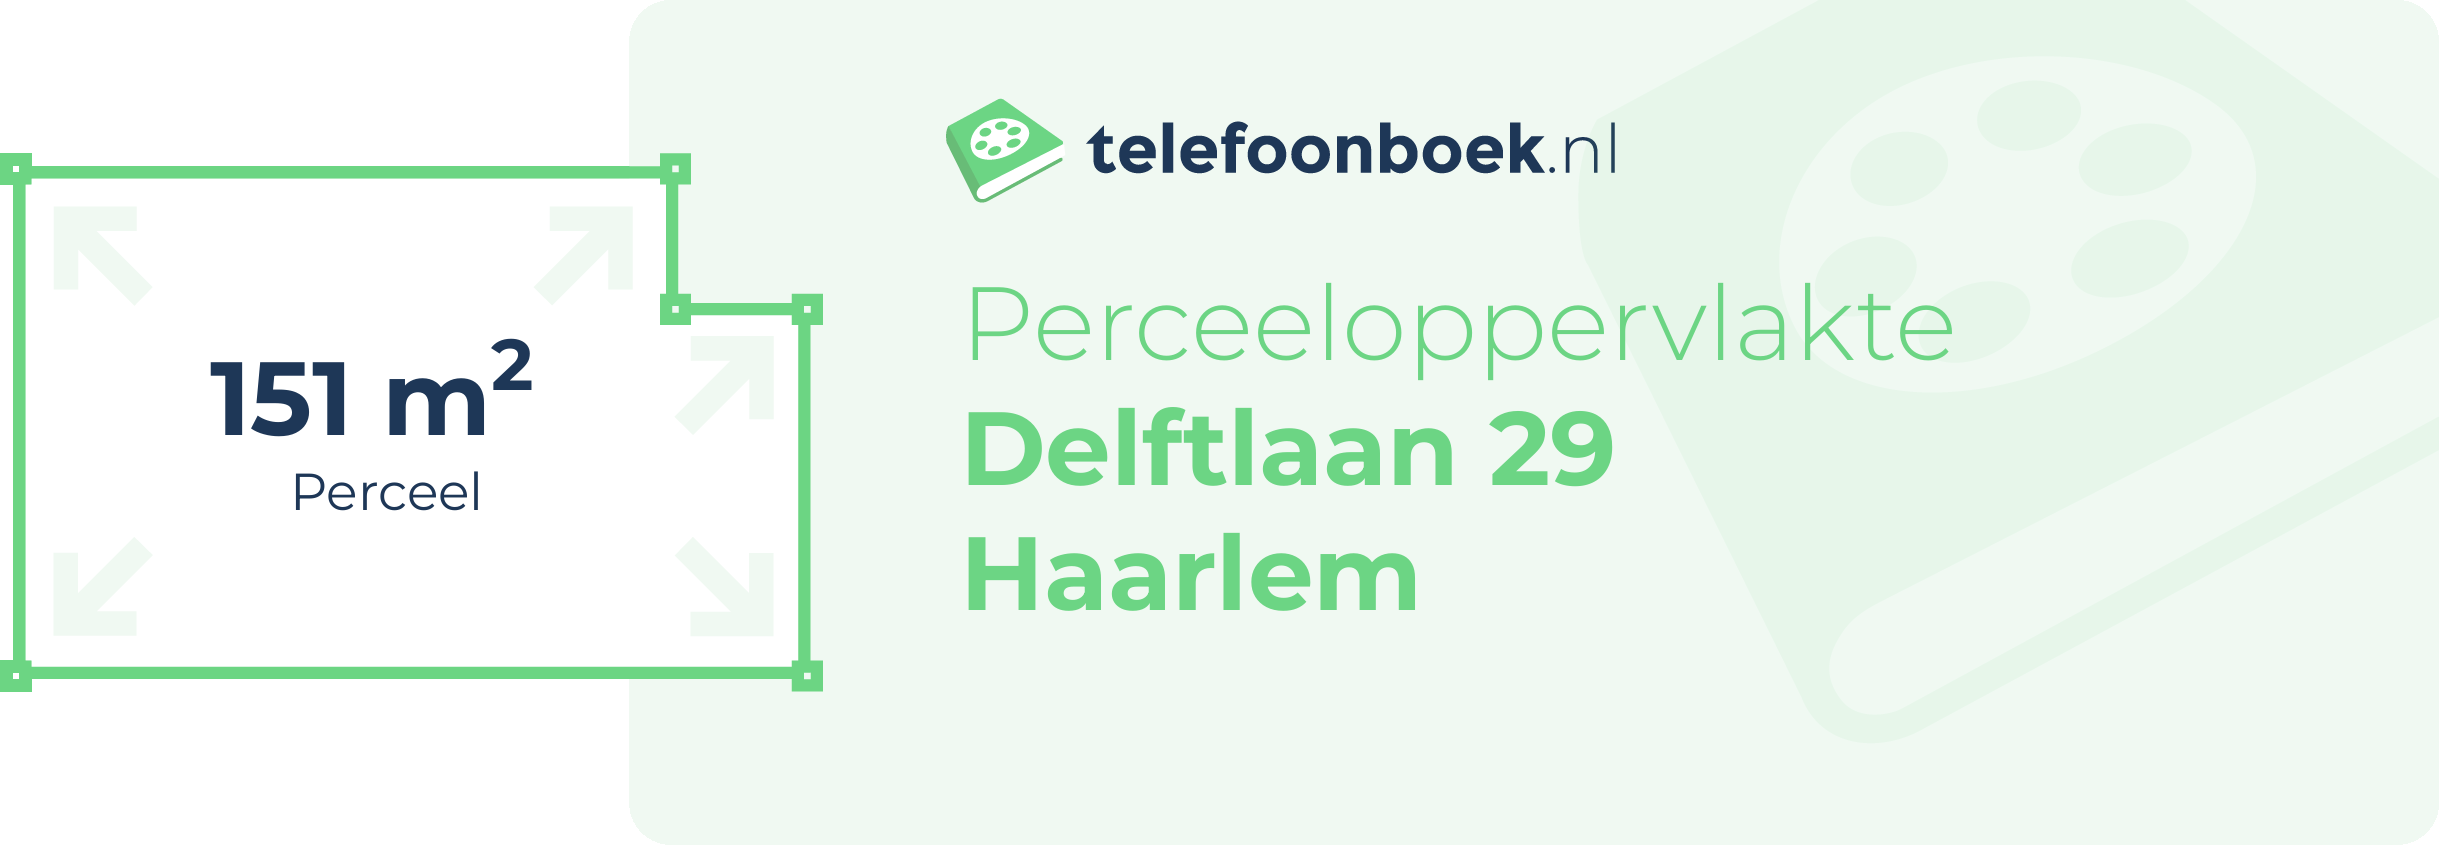 Perceeloppervlakte Delftlaan 29 Haarlem